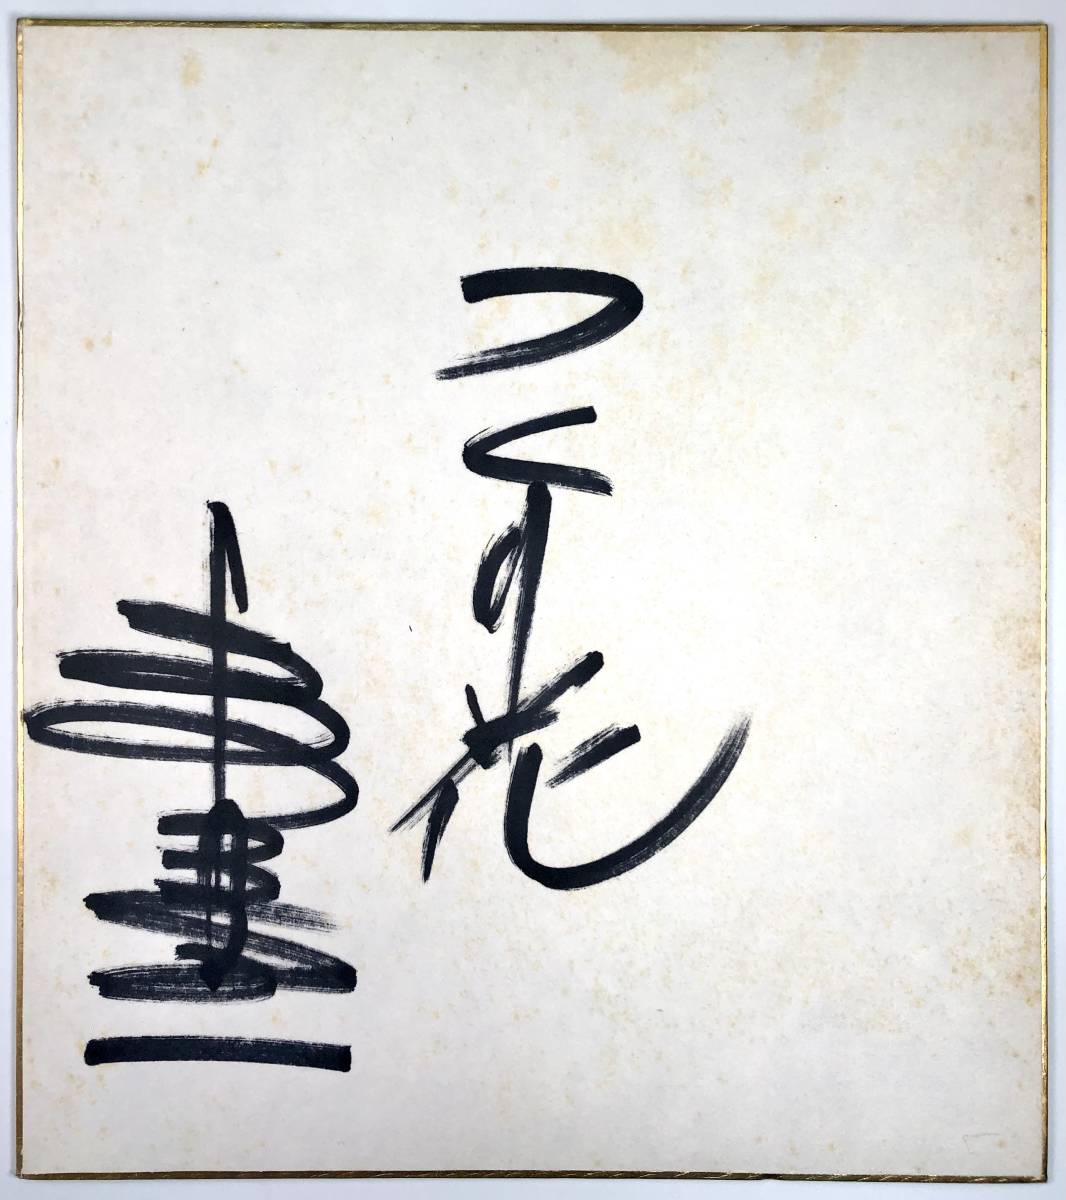 Signiertes farbiges Papier von Shinichi Mori (Shinichi Mori/Sänger/1976/1976/Retro/Schrott), Musik, Souvenir, Erinnerungsstücke, Zeichen